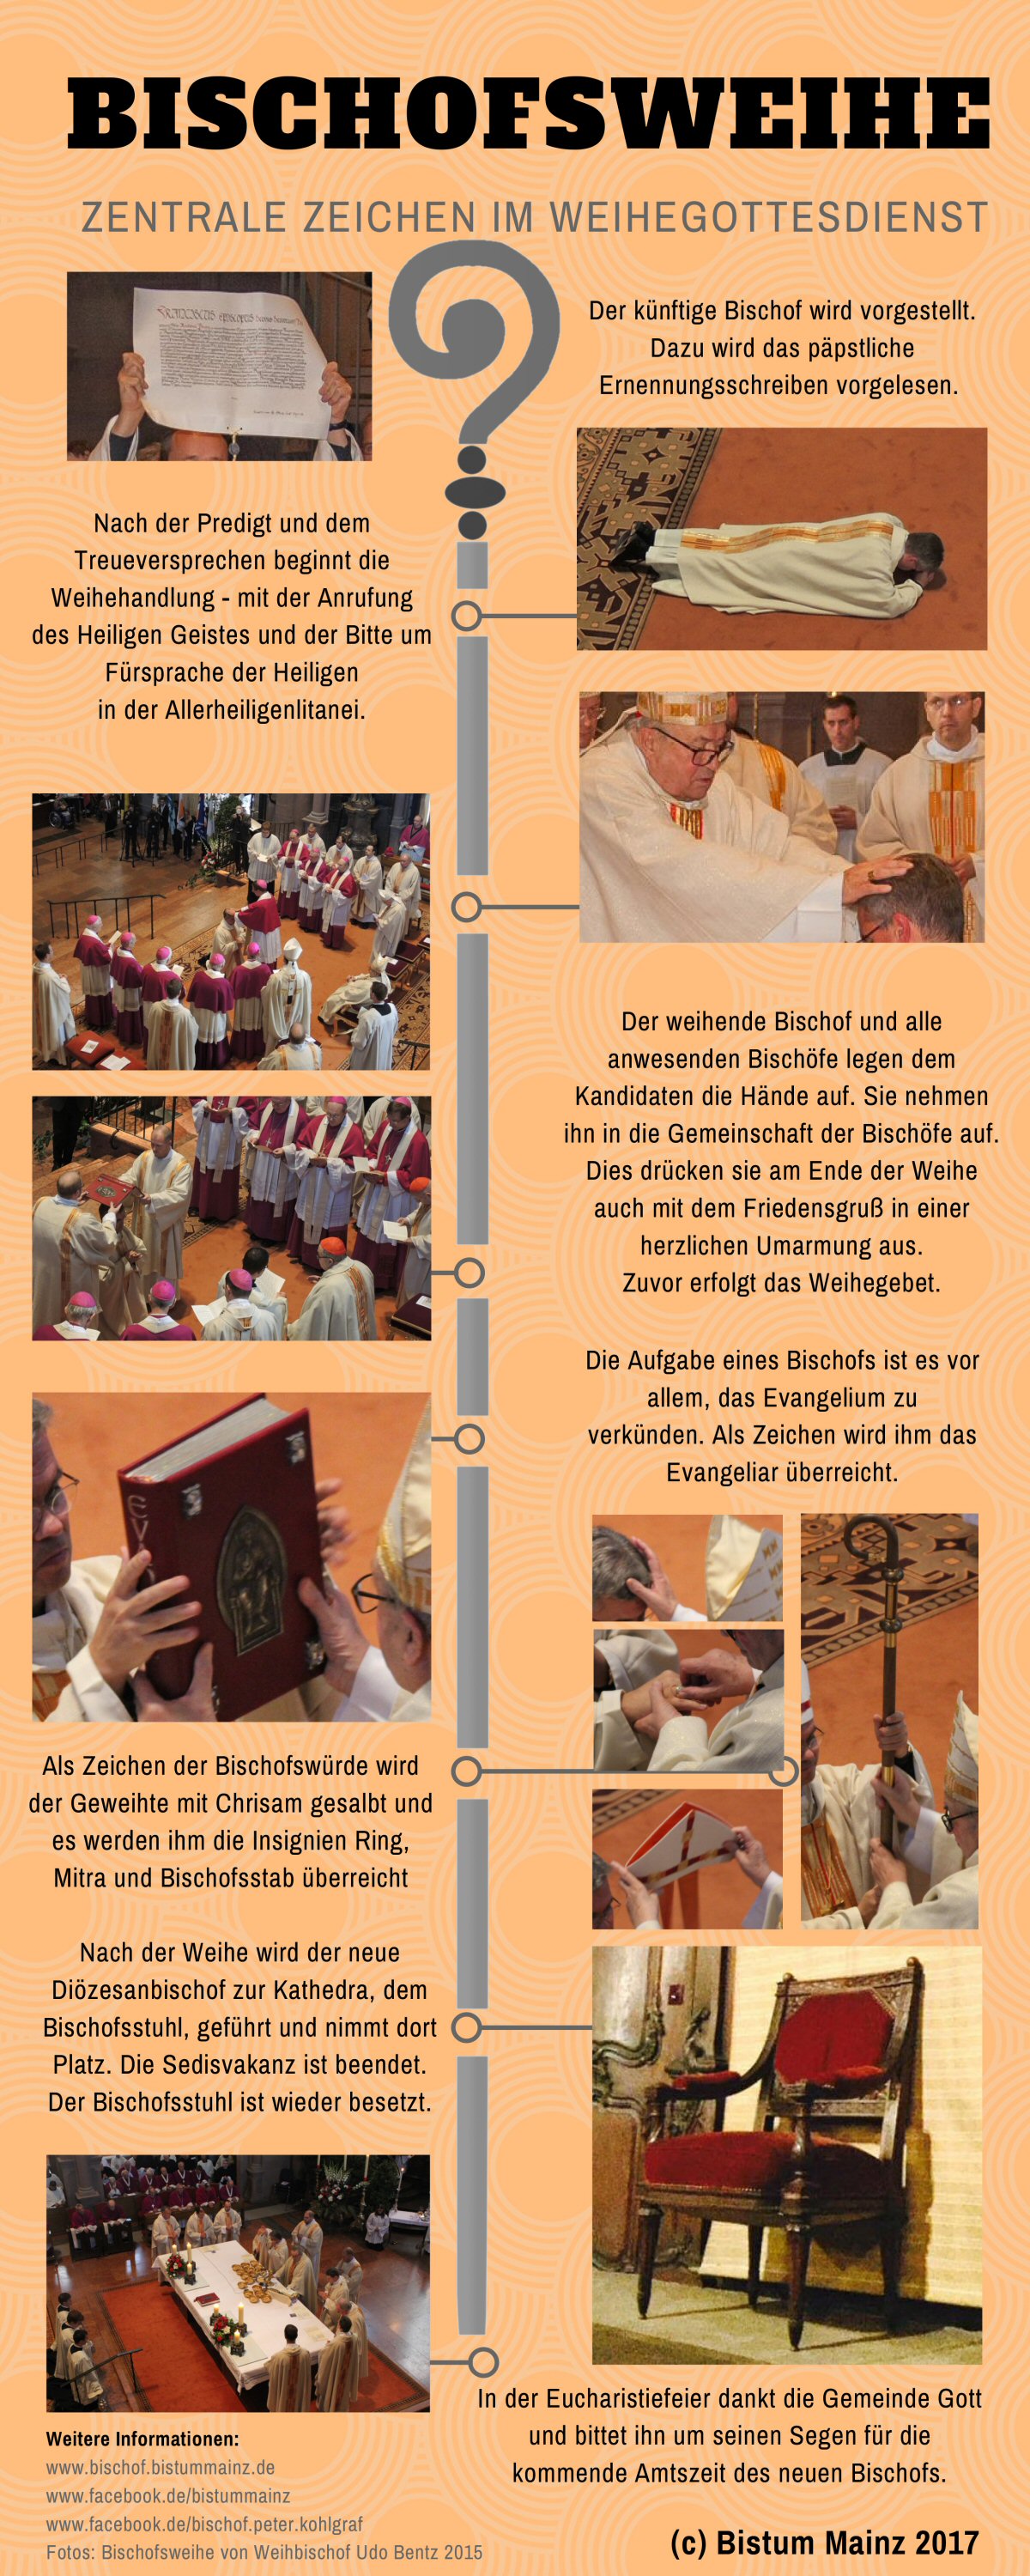 Ablauf der Bischofsweihe (c) Bistum Mainz